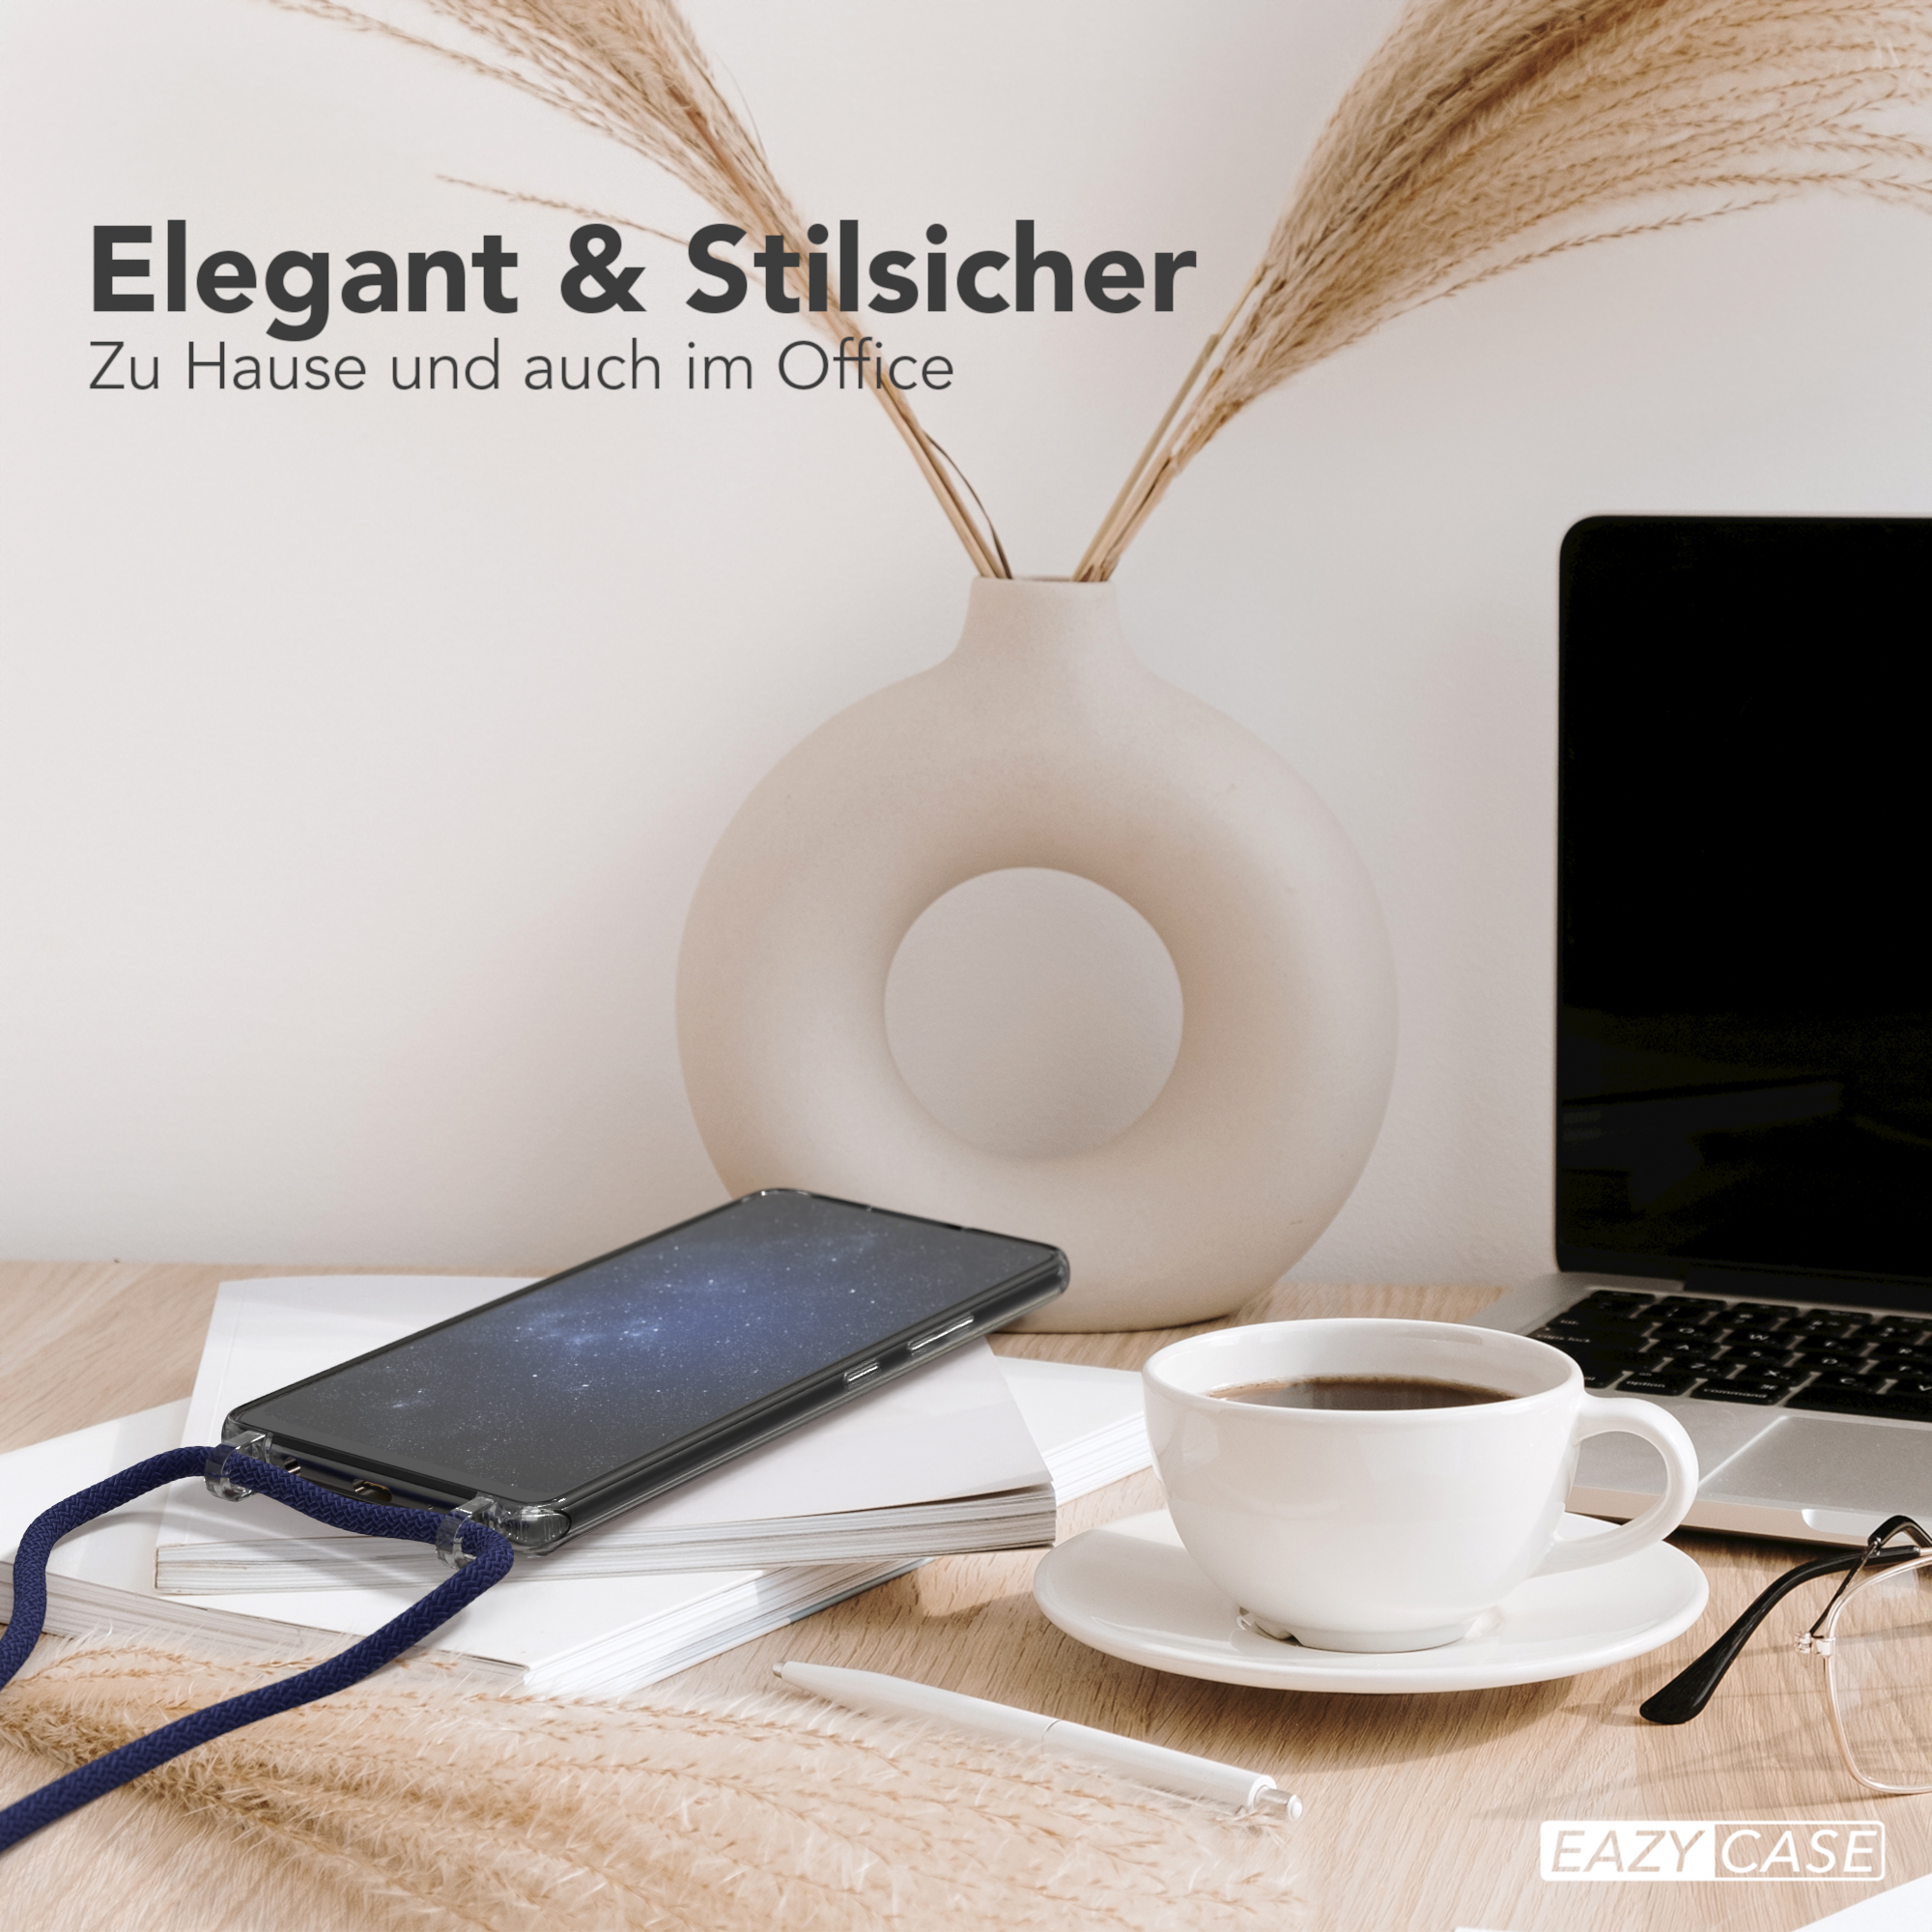 EAZY CASE Transparente Handyhülle A42 Umhängetasche, unifarbend, 5G, Kette Dunkelblau mit Galaxy Samsung, Nachtblau / runder